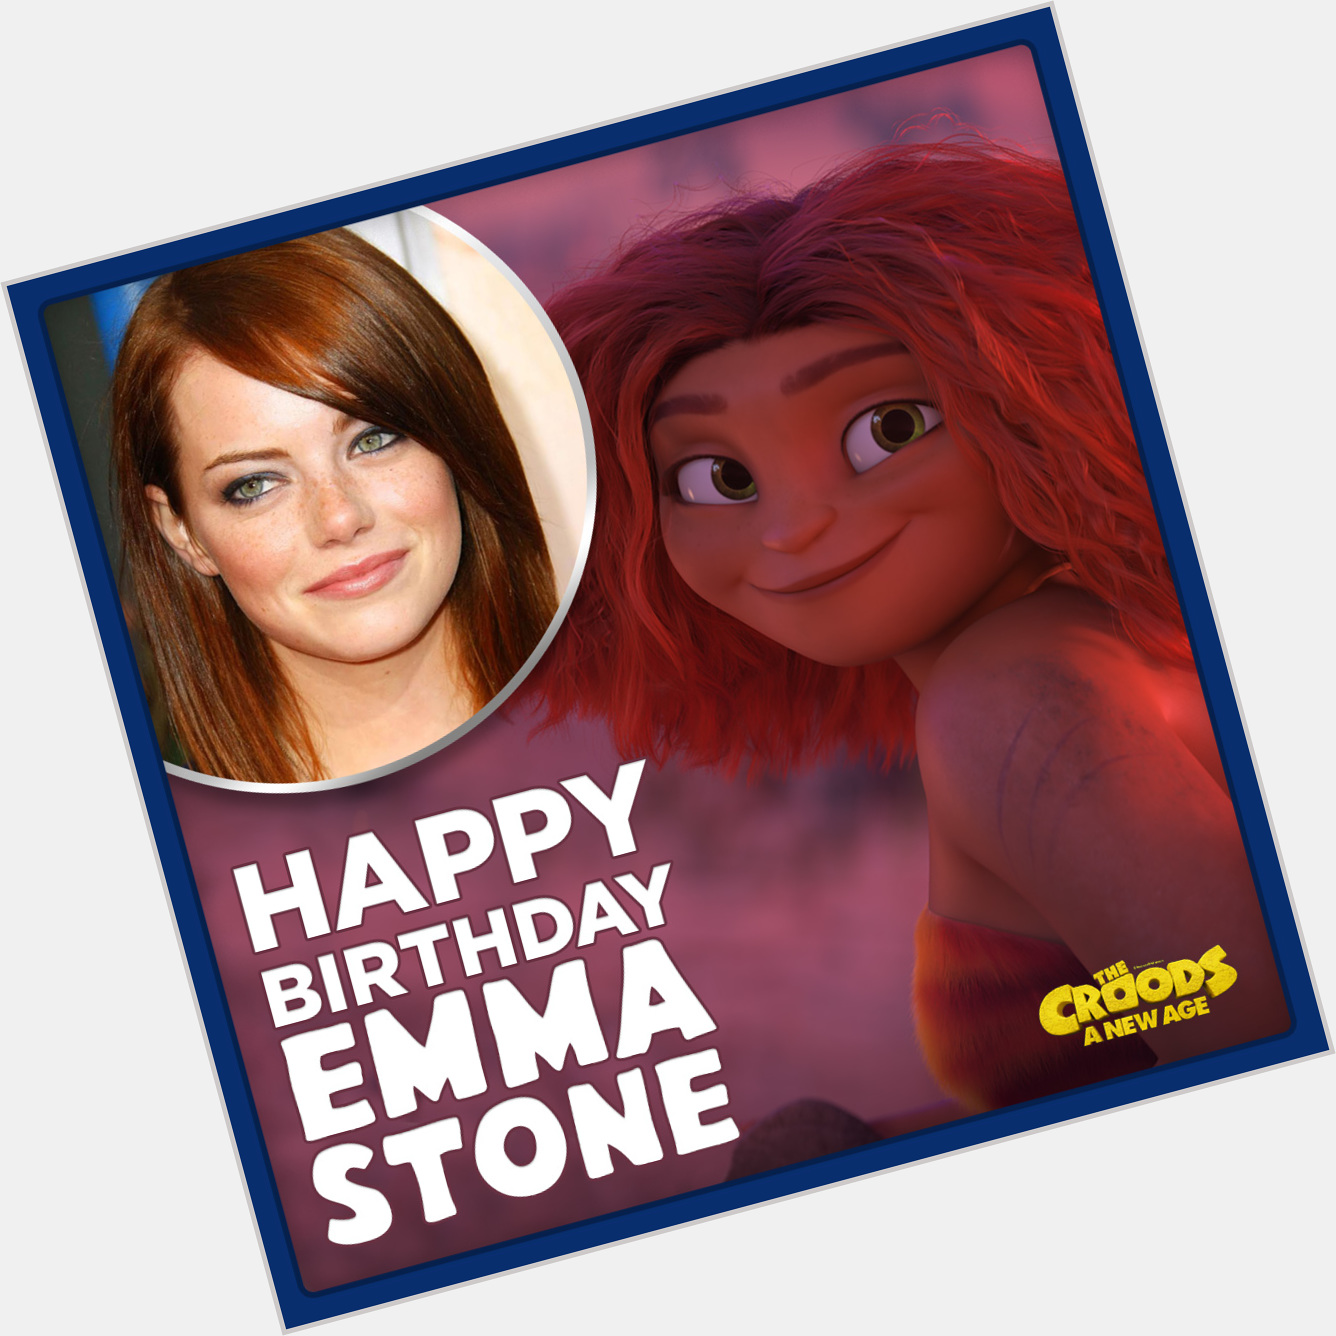 Happy birthday, Emma Stone!  